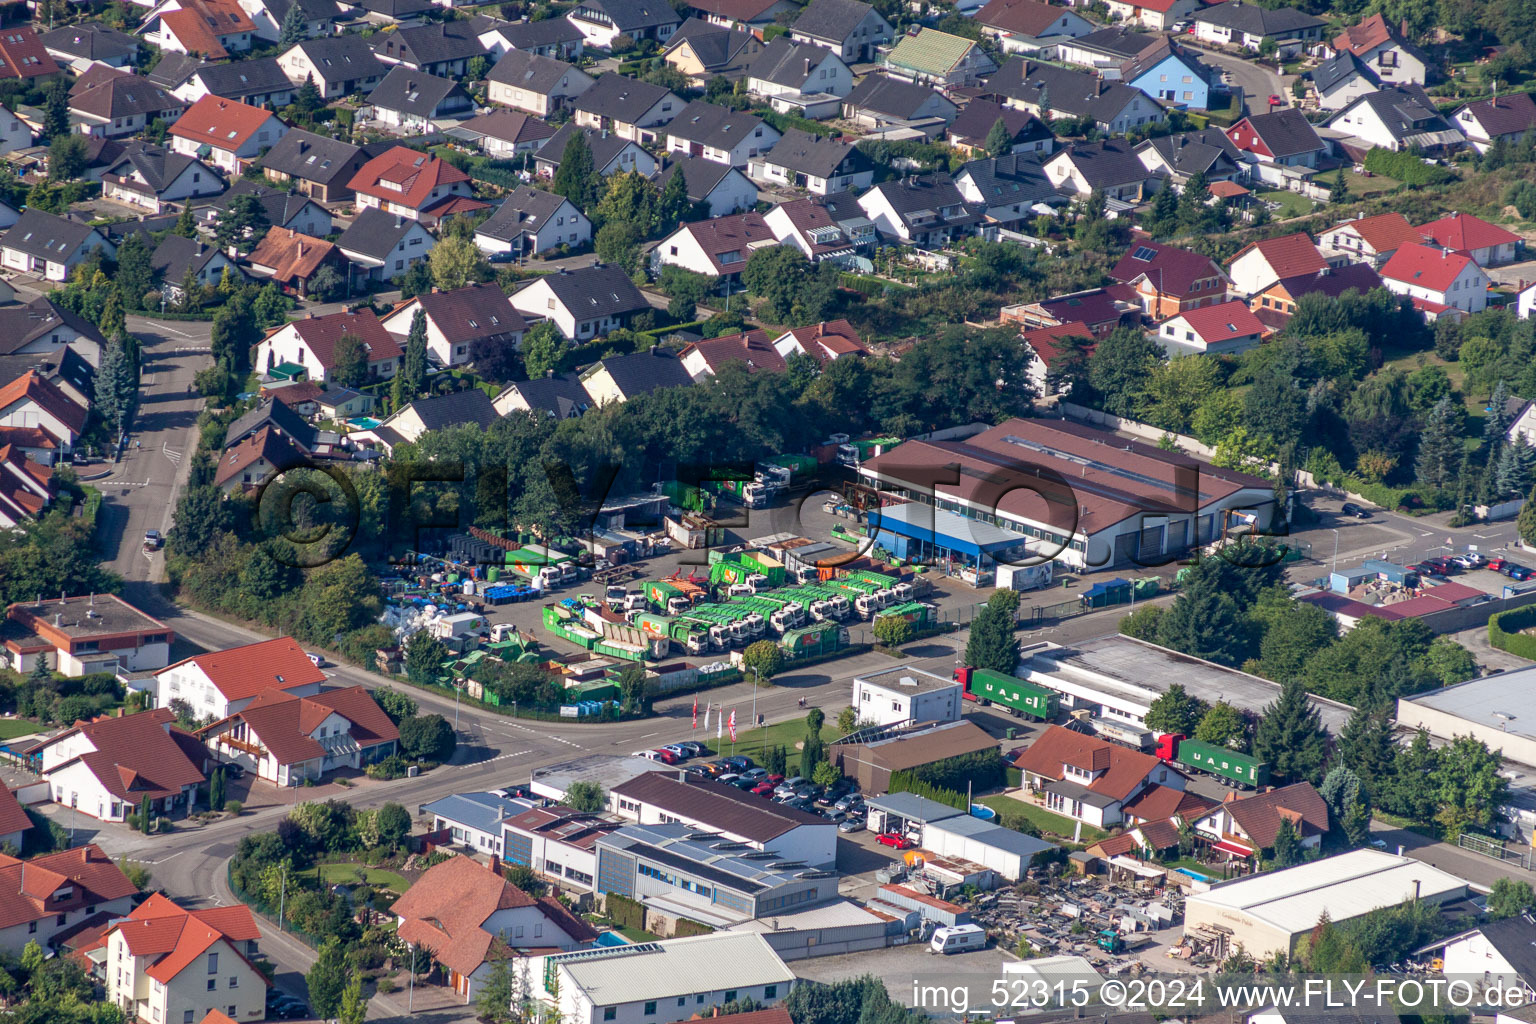 Vue aérienne de Site de la déchetterie usine de tri des déchets et recyclage Rülzheim à Rülzheim dans le département Rhénanie-Palatinat, Allemagne